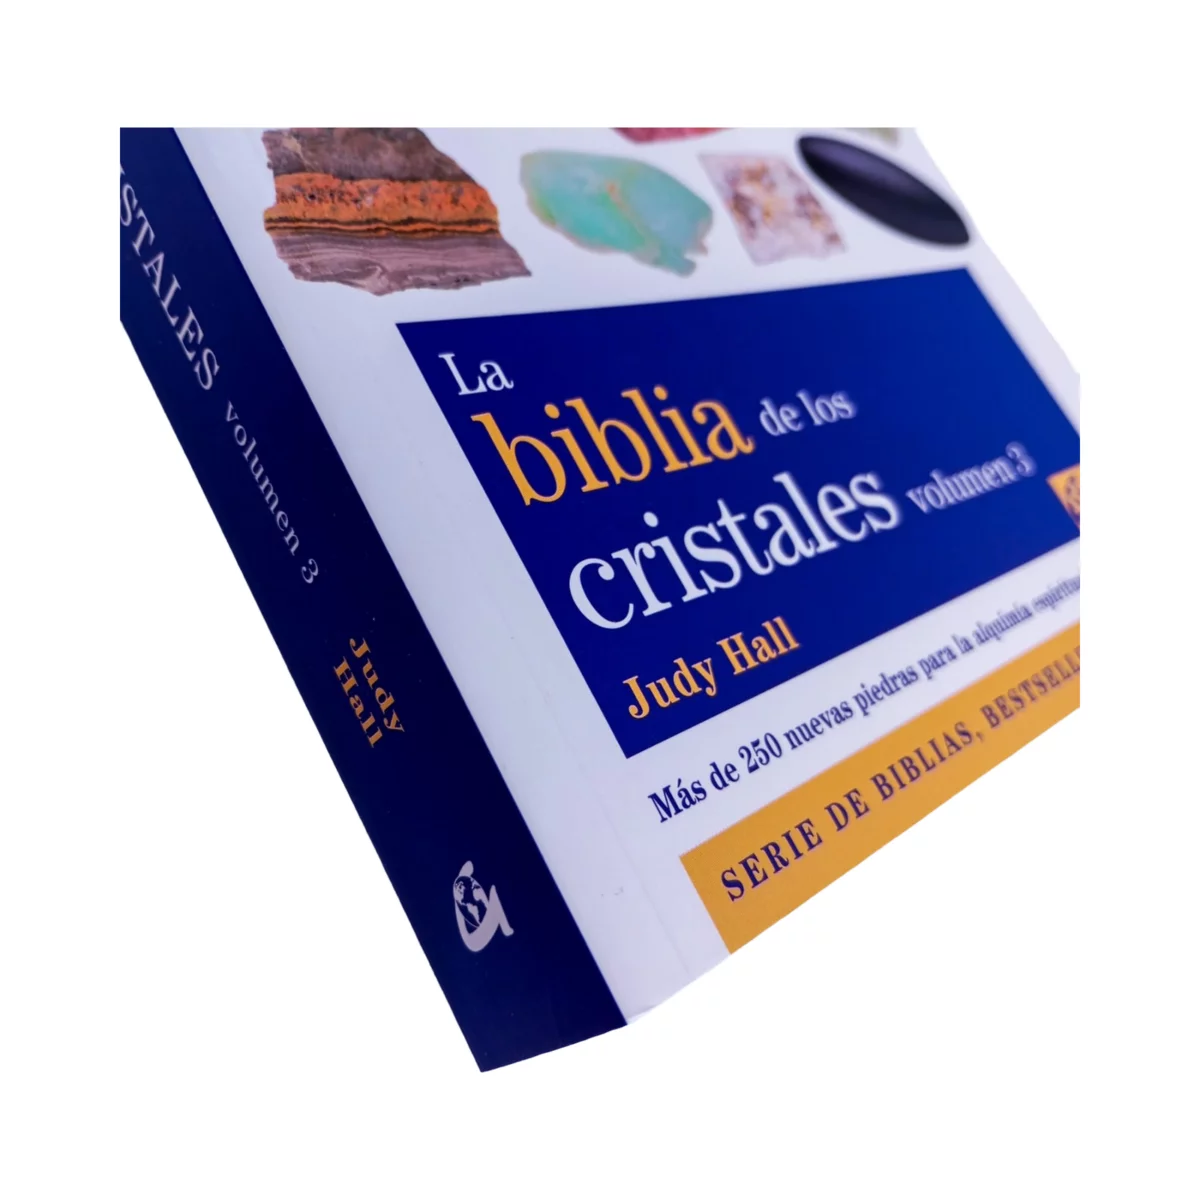 La Biblia De Los Cristales - Judy Hall - Grupal - La Maja Libros